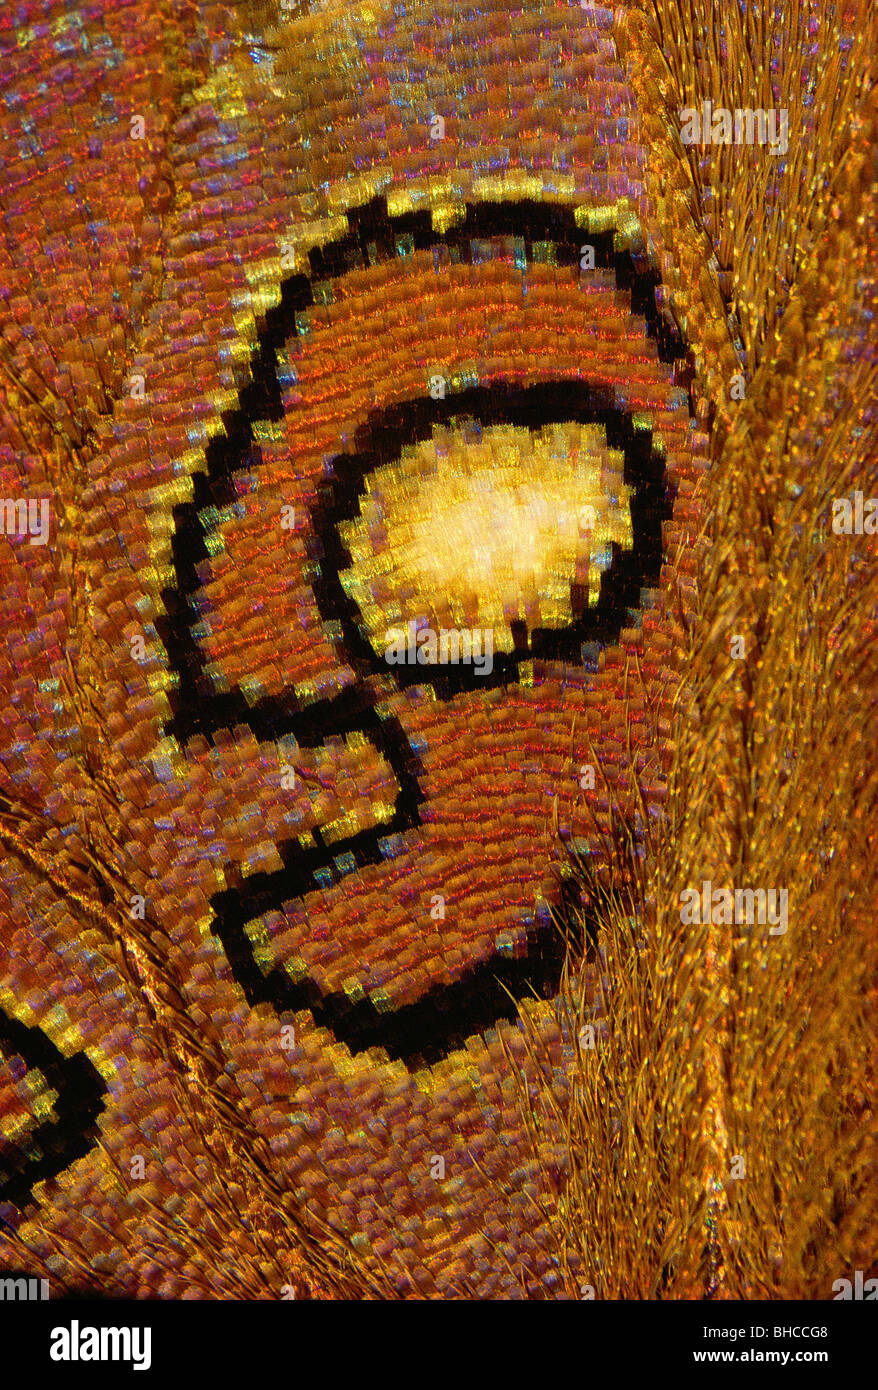 Détails sur Nymphalidae : Historis acheronta, papillon, schéma d'un visage d'un Cyclope. Banque D'Images